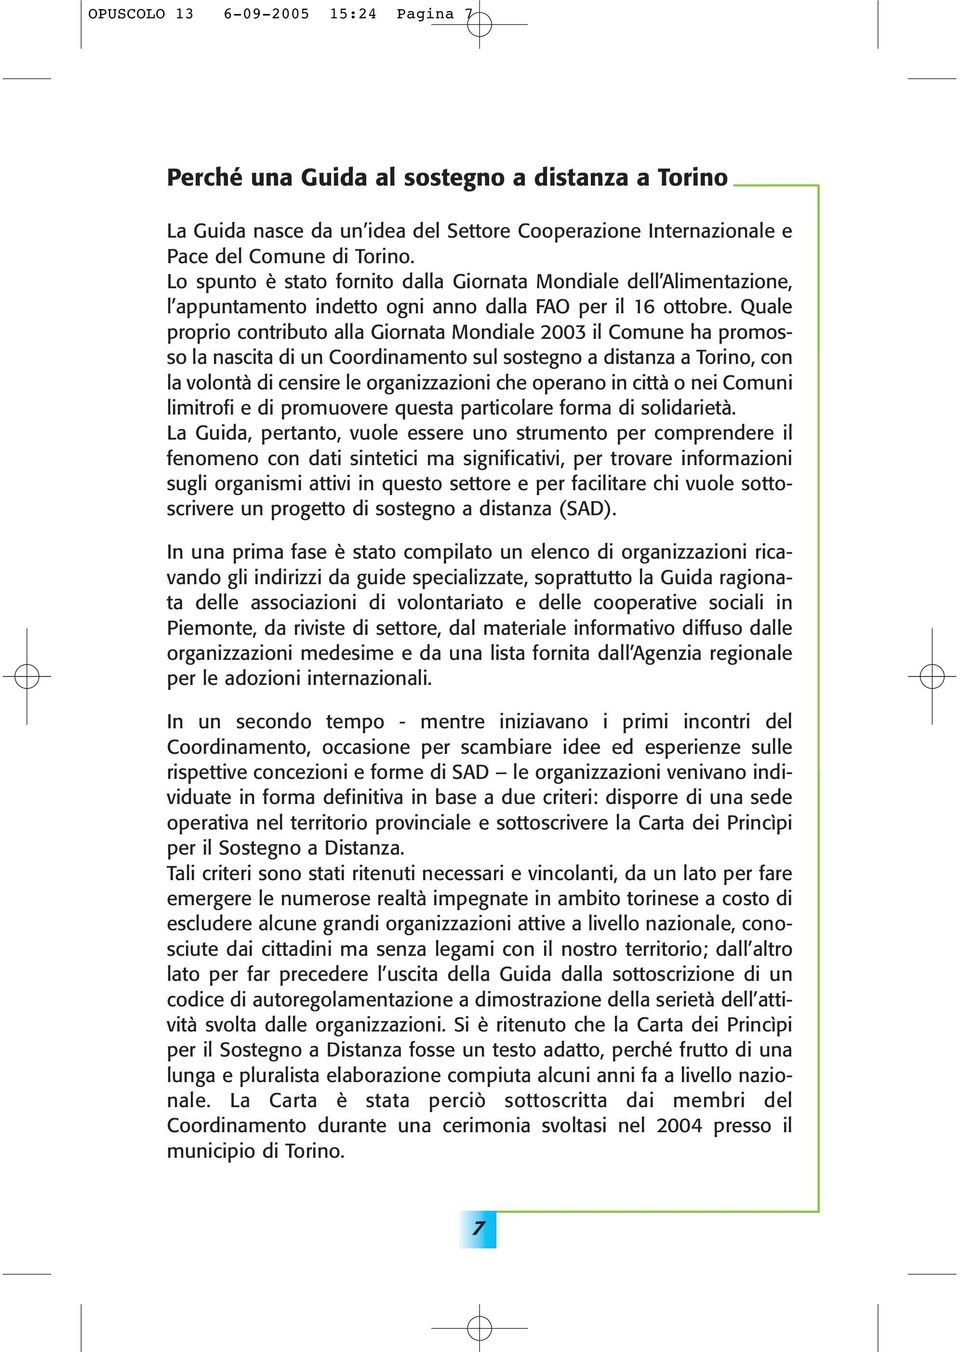 Quale proprio contributo alla Giornata Mondiale 2003 il Comune ha promosso la nascita di un Coordinamento sul sostegno a distanza a Torino, con la volontà di censire le organizzazioni che operano in